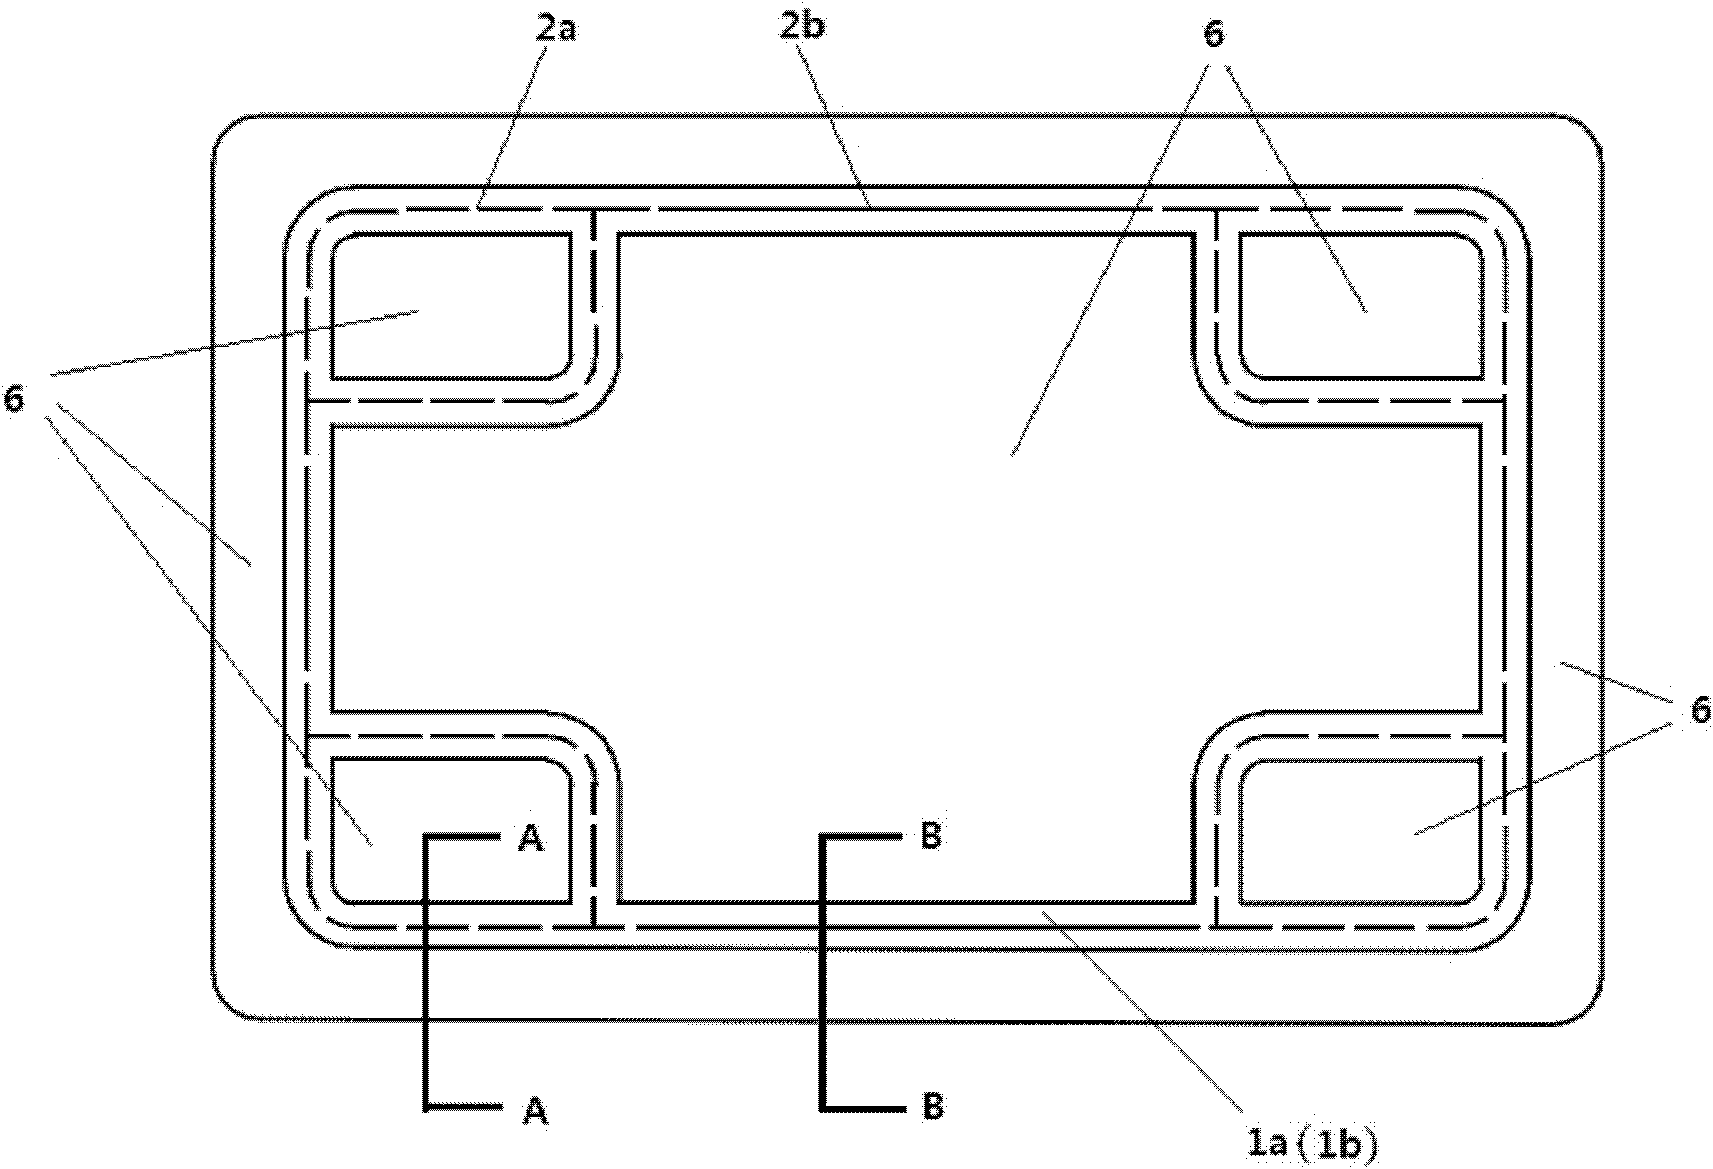 Laser weld-bonding method of bipolar plate of fuel cell